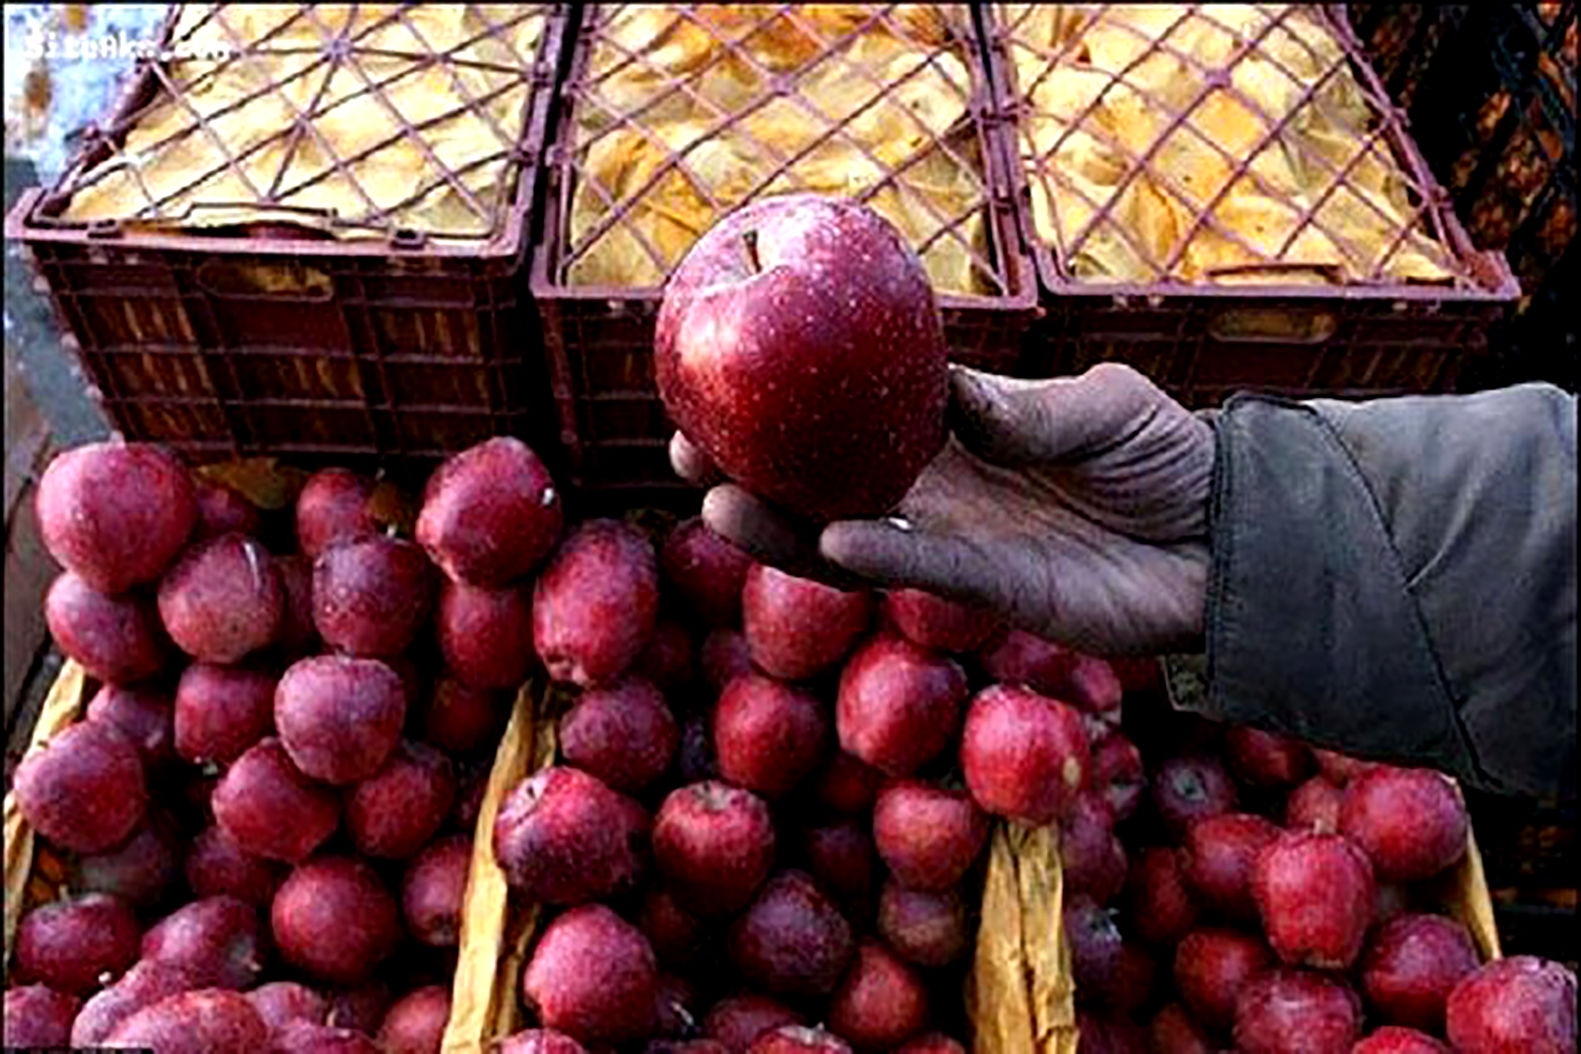 میوه سیب تظیم بازار عید، ۱۰۰ درصد ذخیره شده است